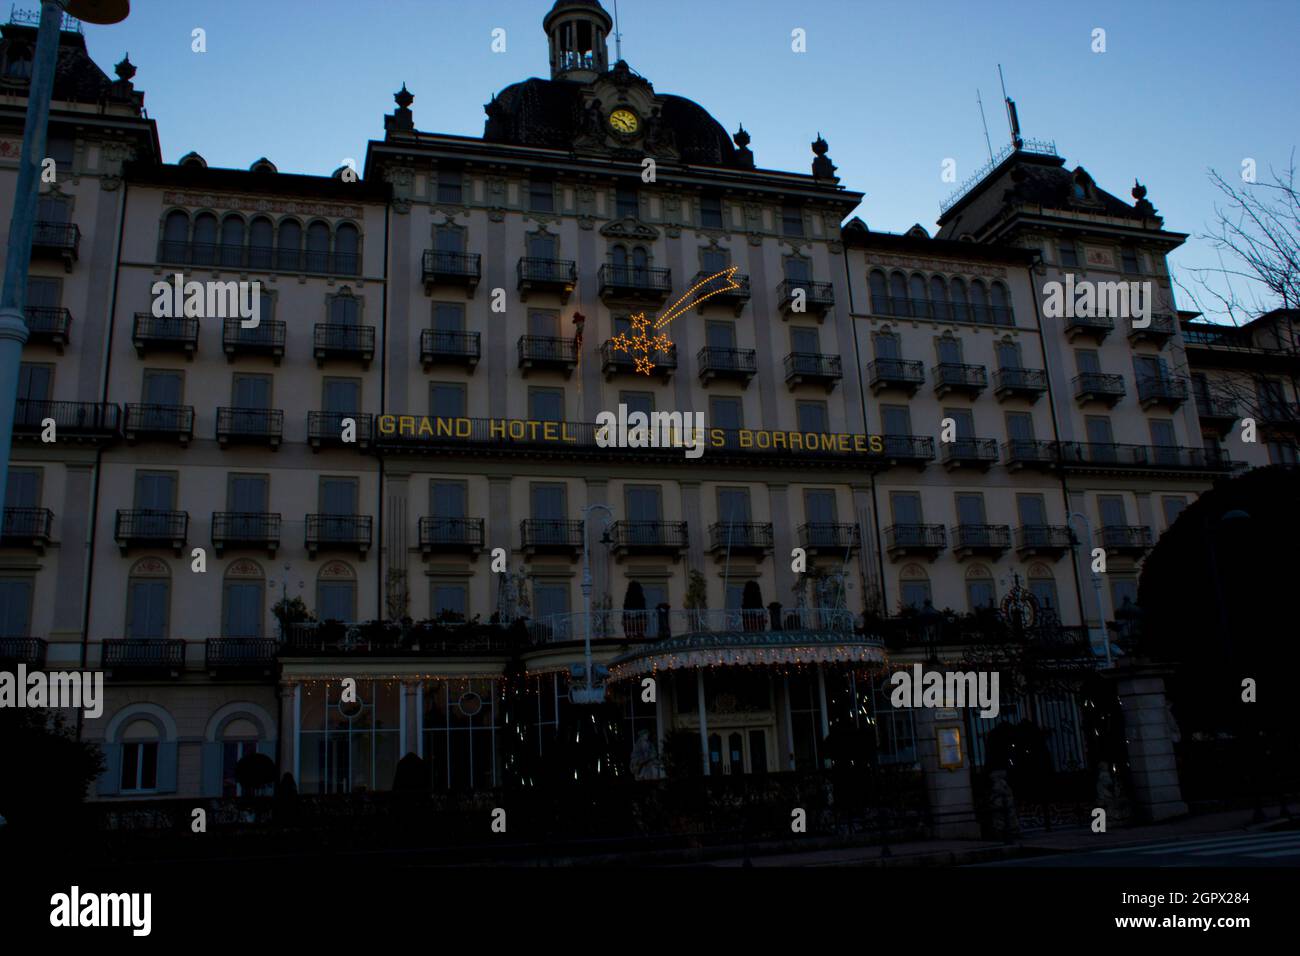 Façade d'un grand hôtel de luxe italien avec des arbres illuminés pour Noël, comète lumineuse et le Père Noël grimpant un balcon Banque D'Images